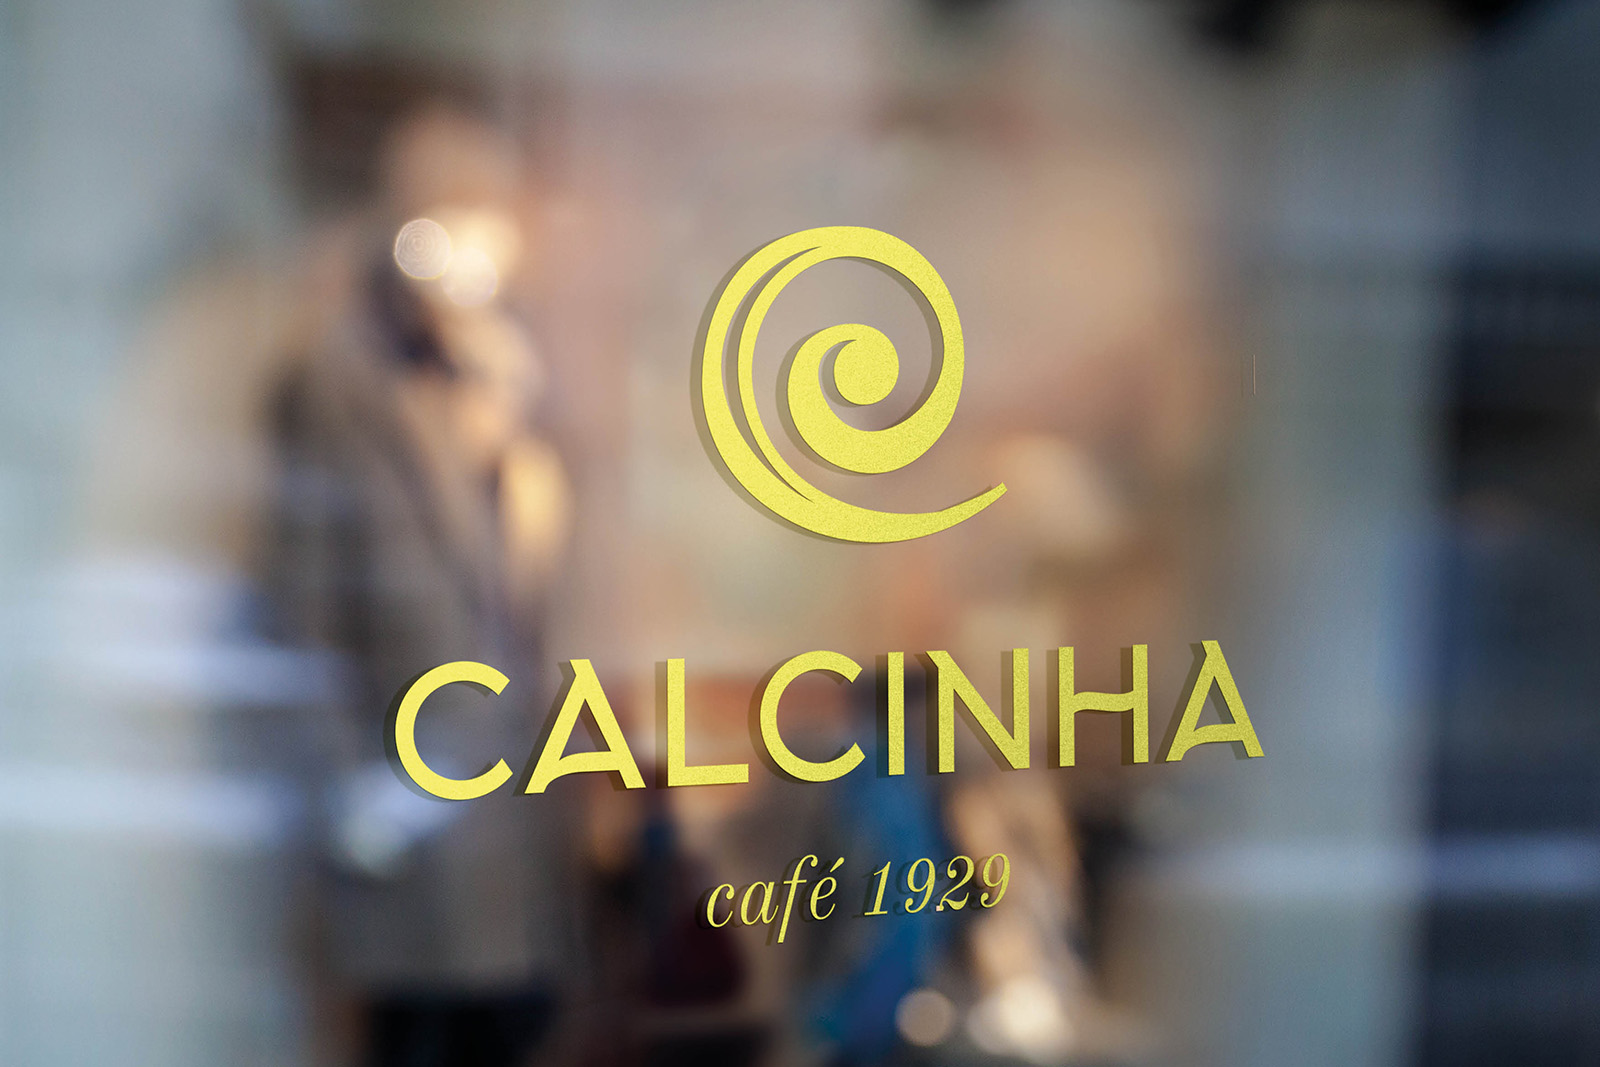 CAFE CALCINHA